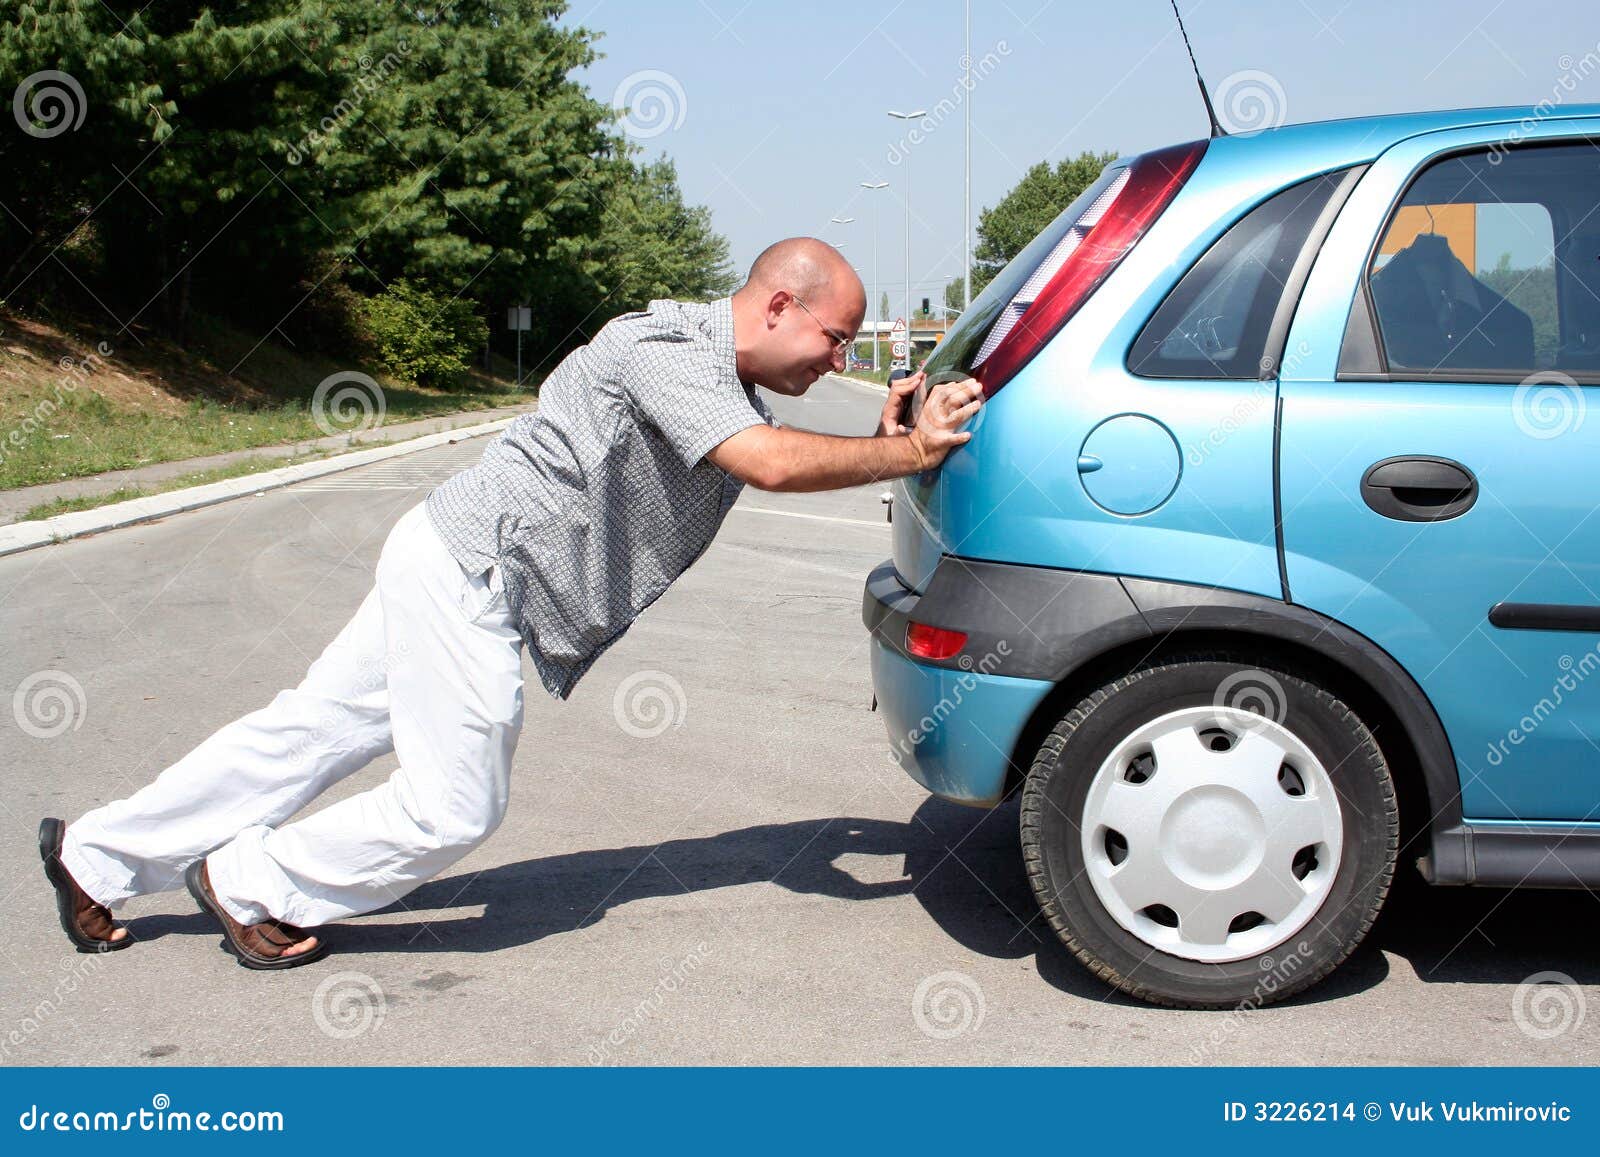 man pushing a car